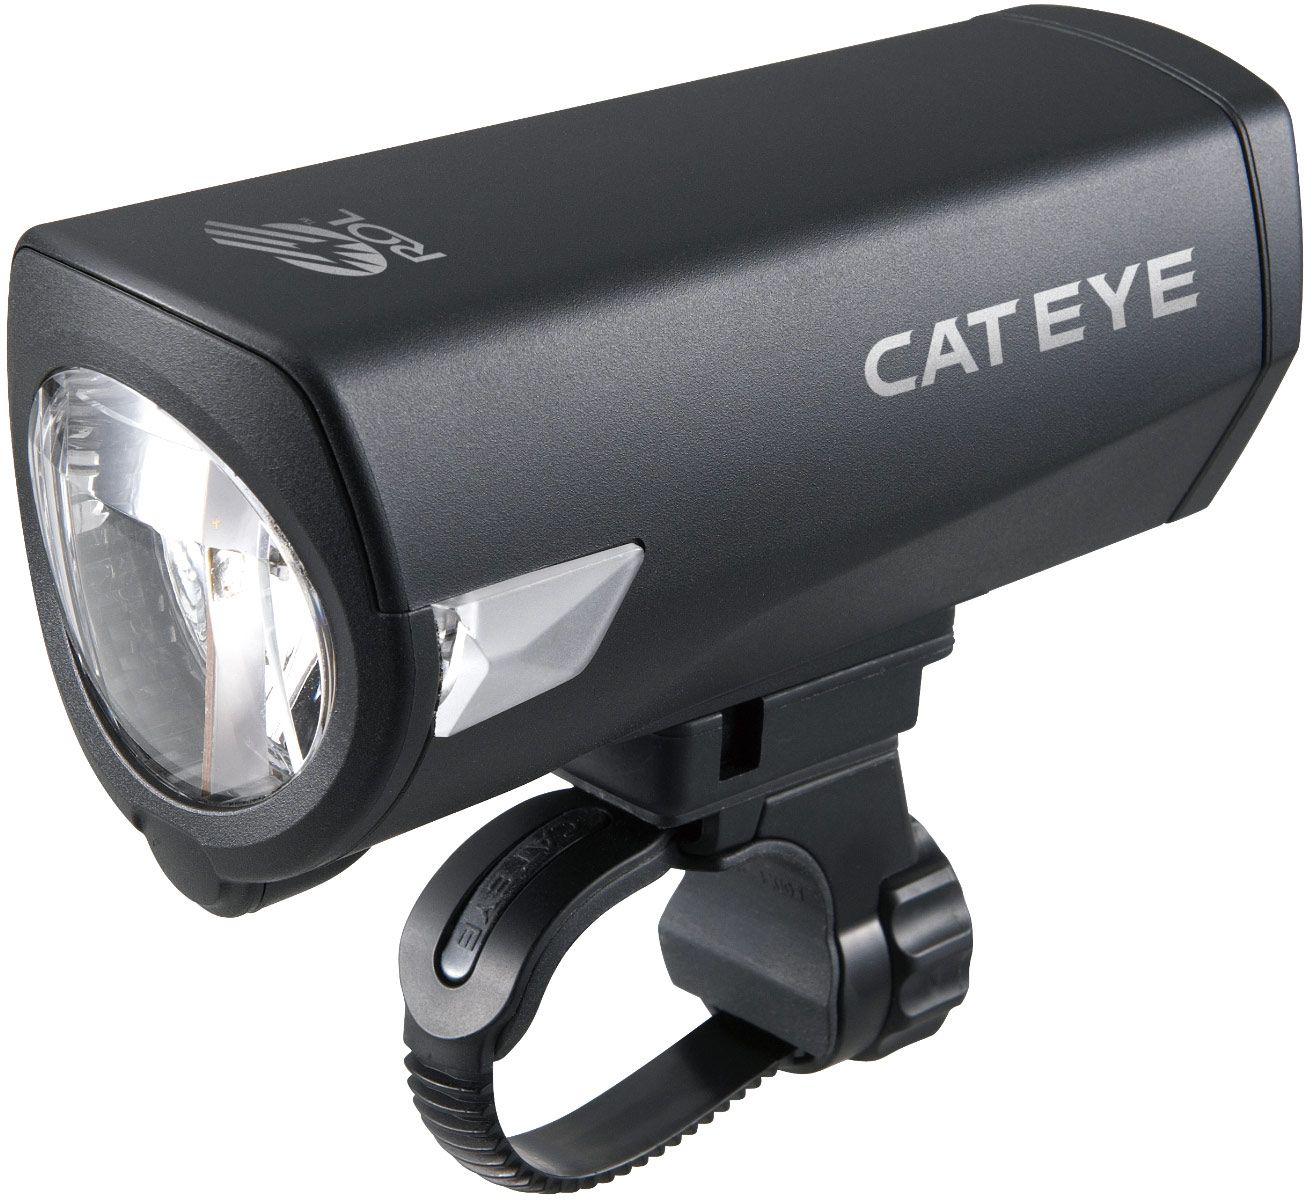  Передний фонарь для велосипеда Cat Eye HL-EL340GRC (CE5336791)